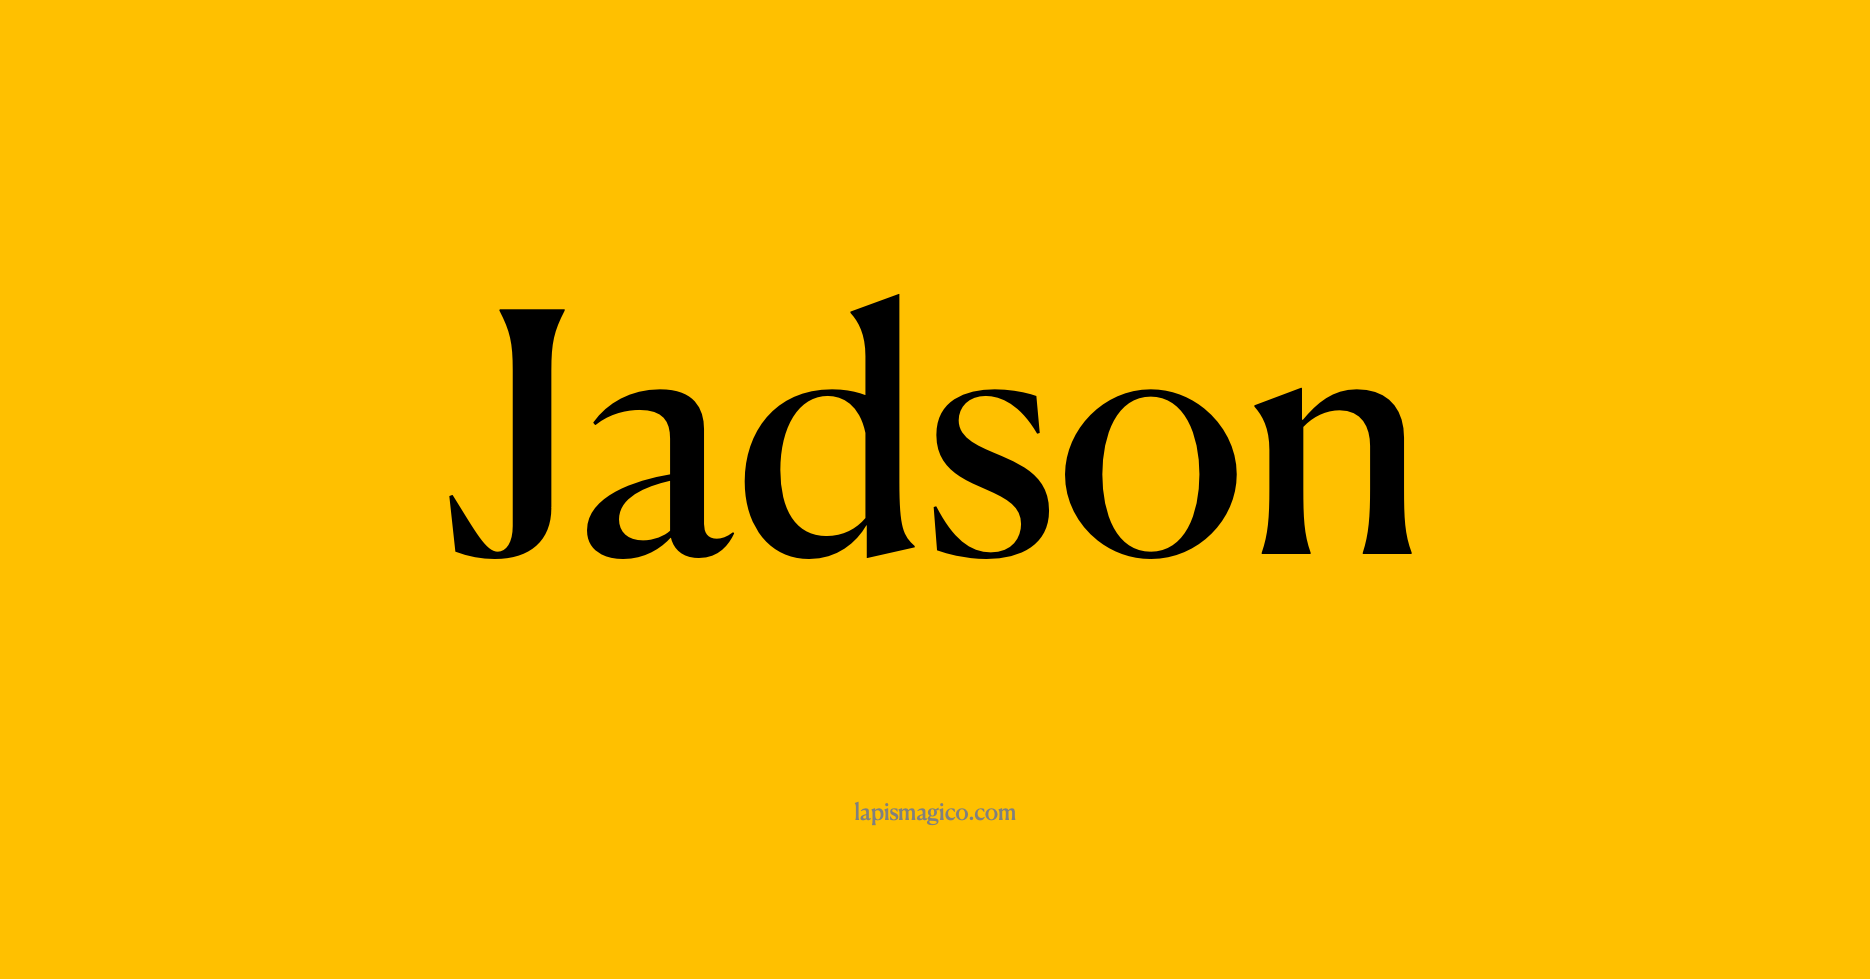 Nome Jadson, ficha divertida com pontilhado para crianças